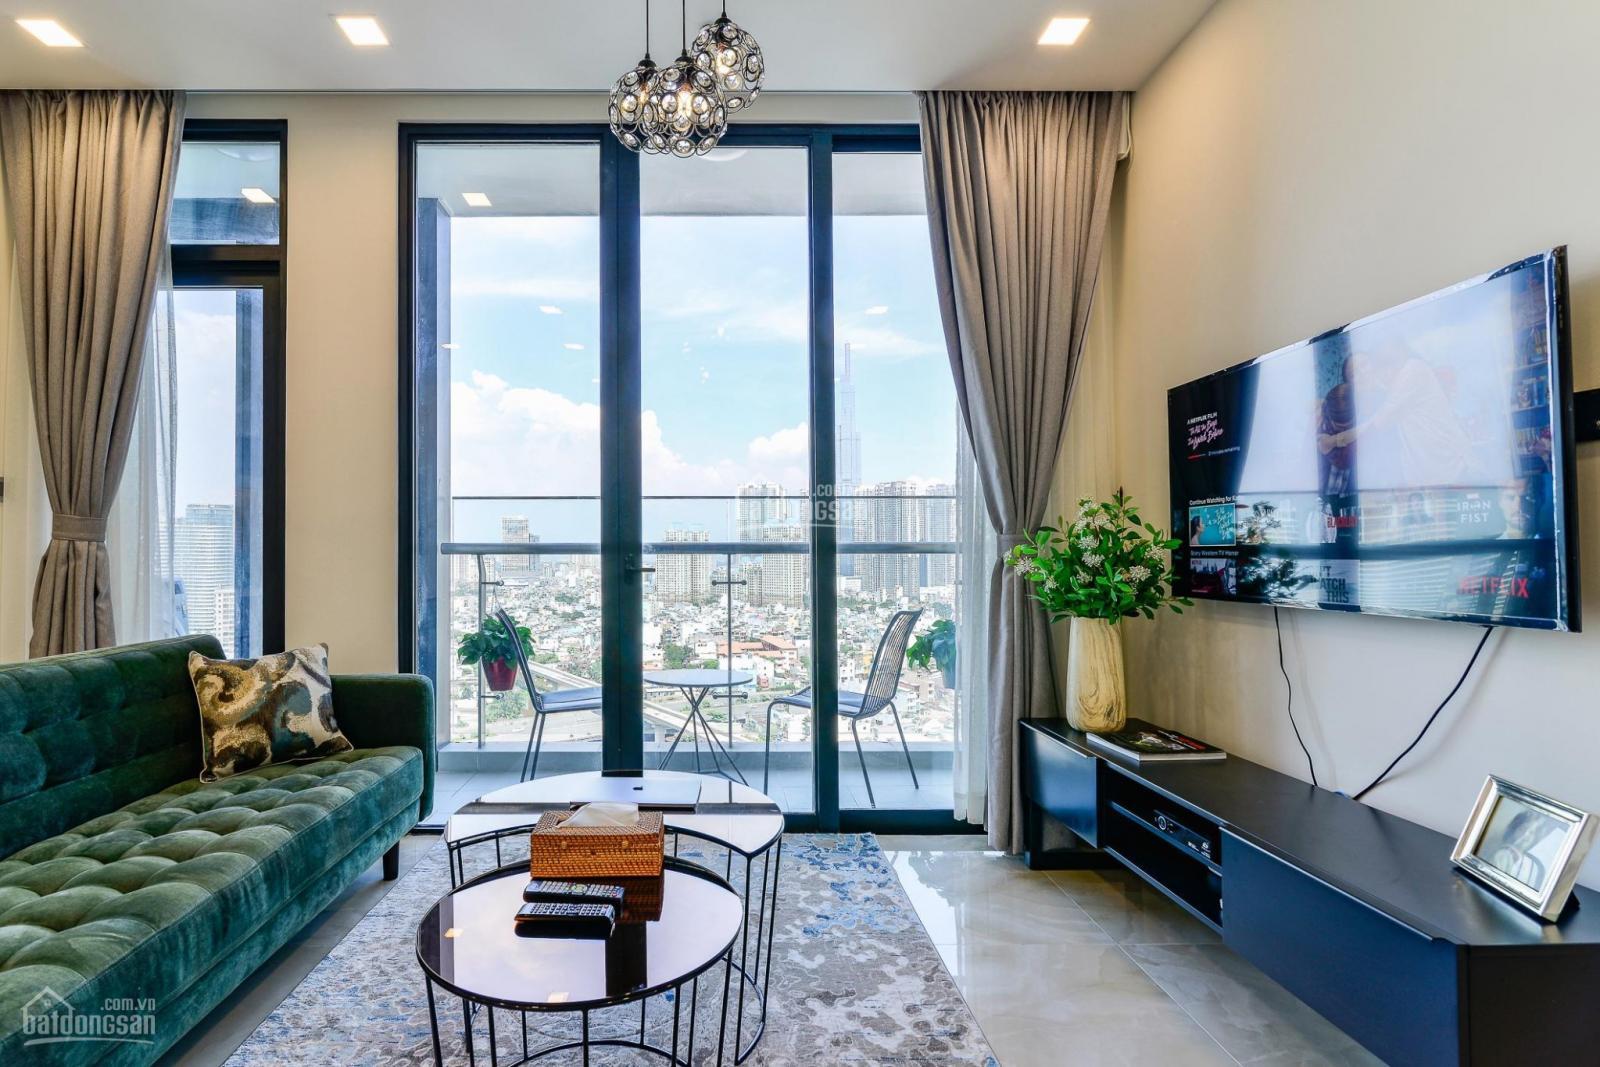 Cho thuê căn hộ Vinhomes Central Park giá tốt nhất thị trường (1,2,3,4PN, penthouse)